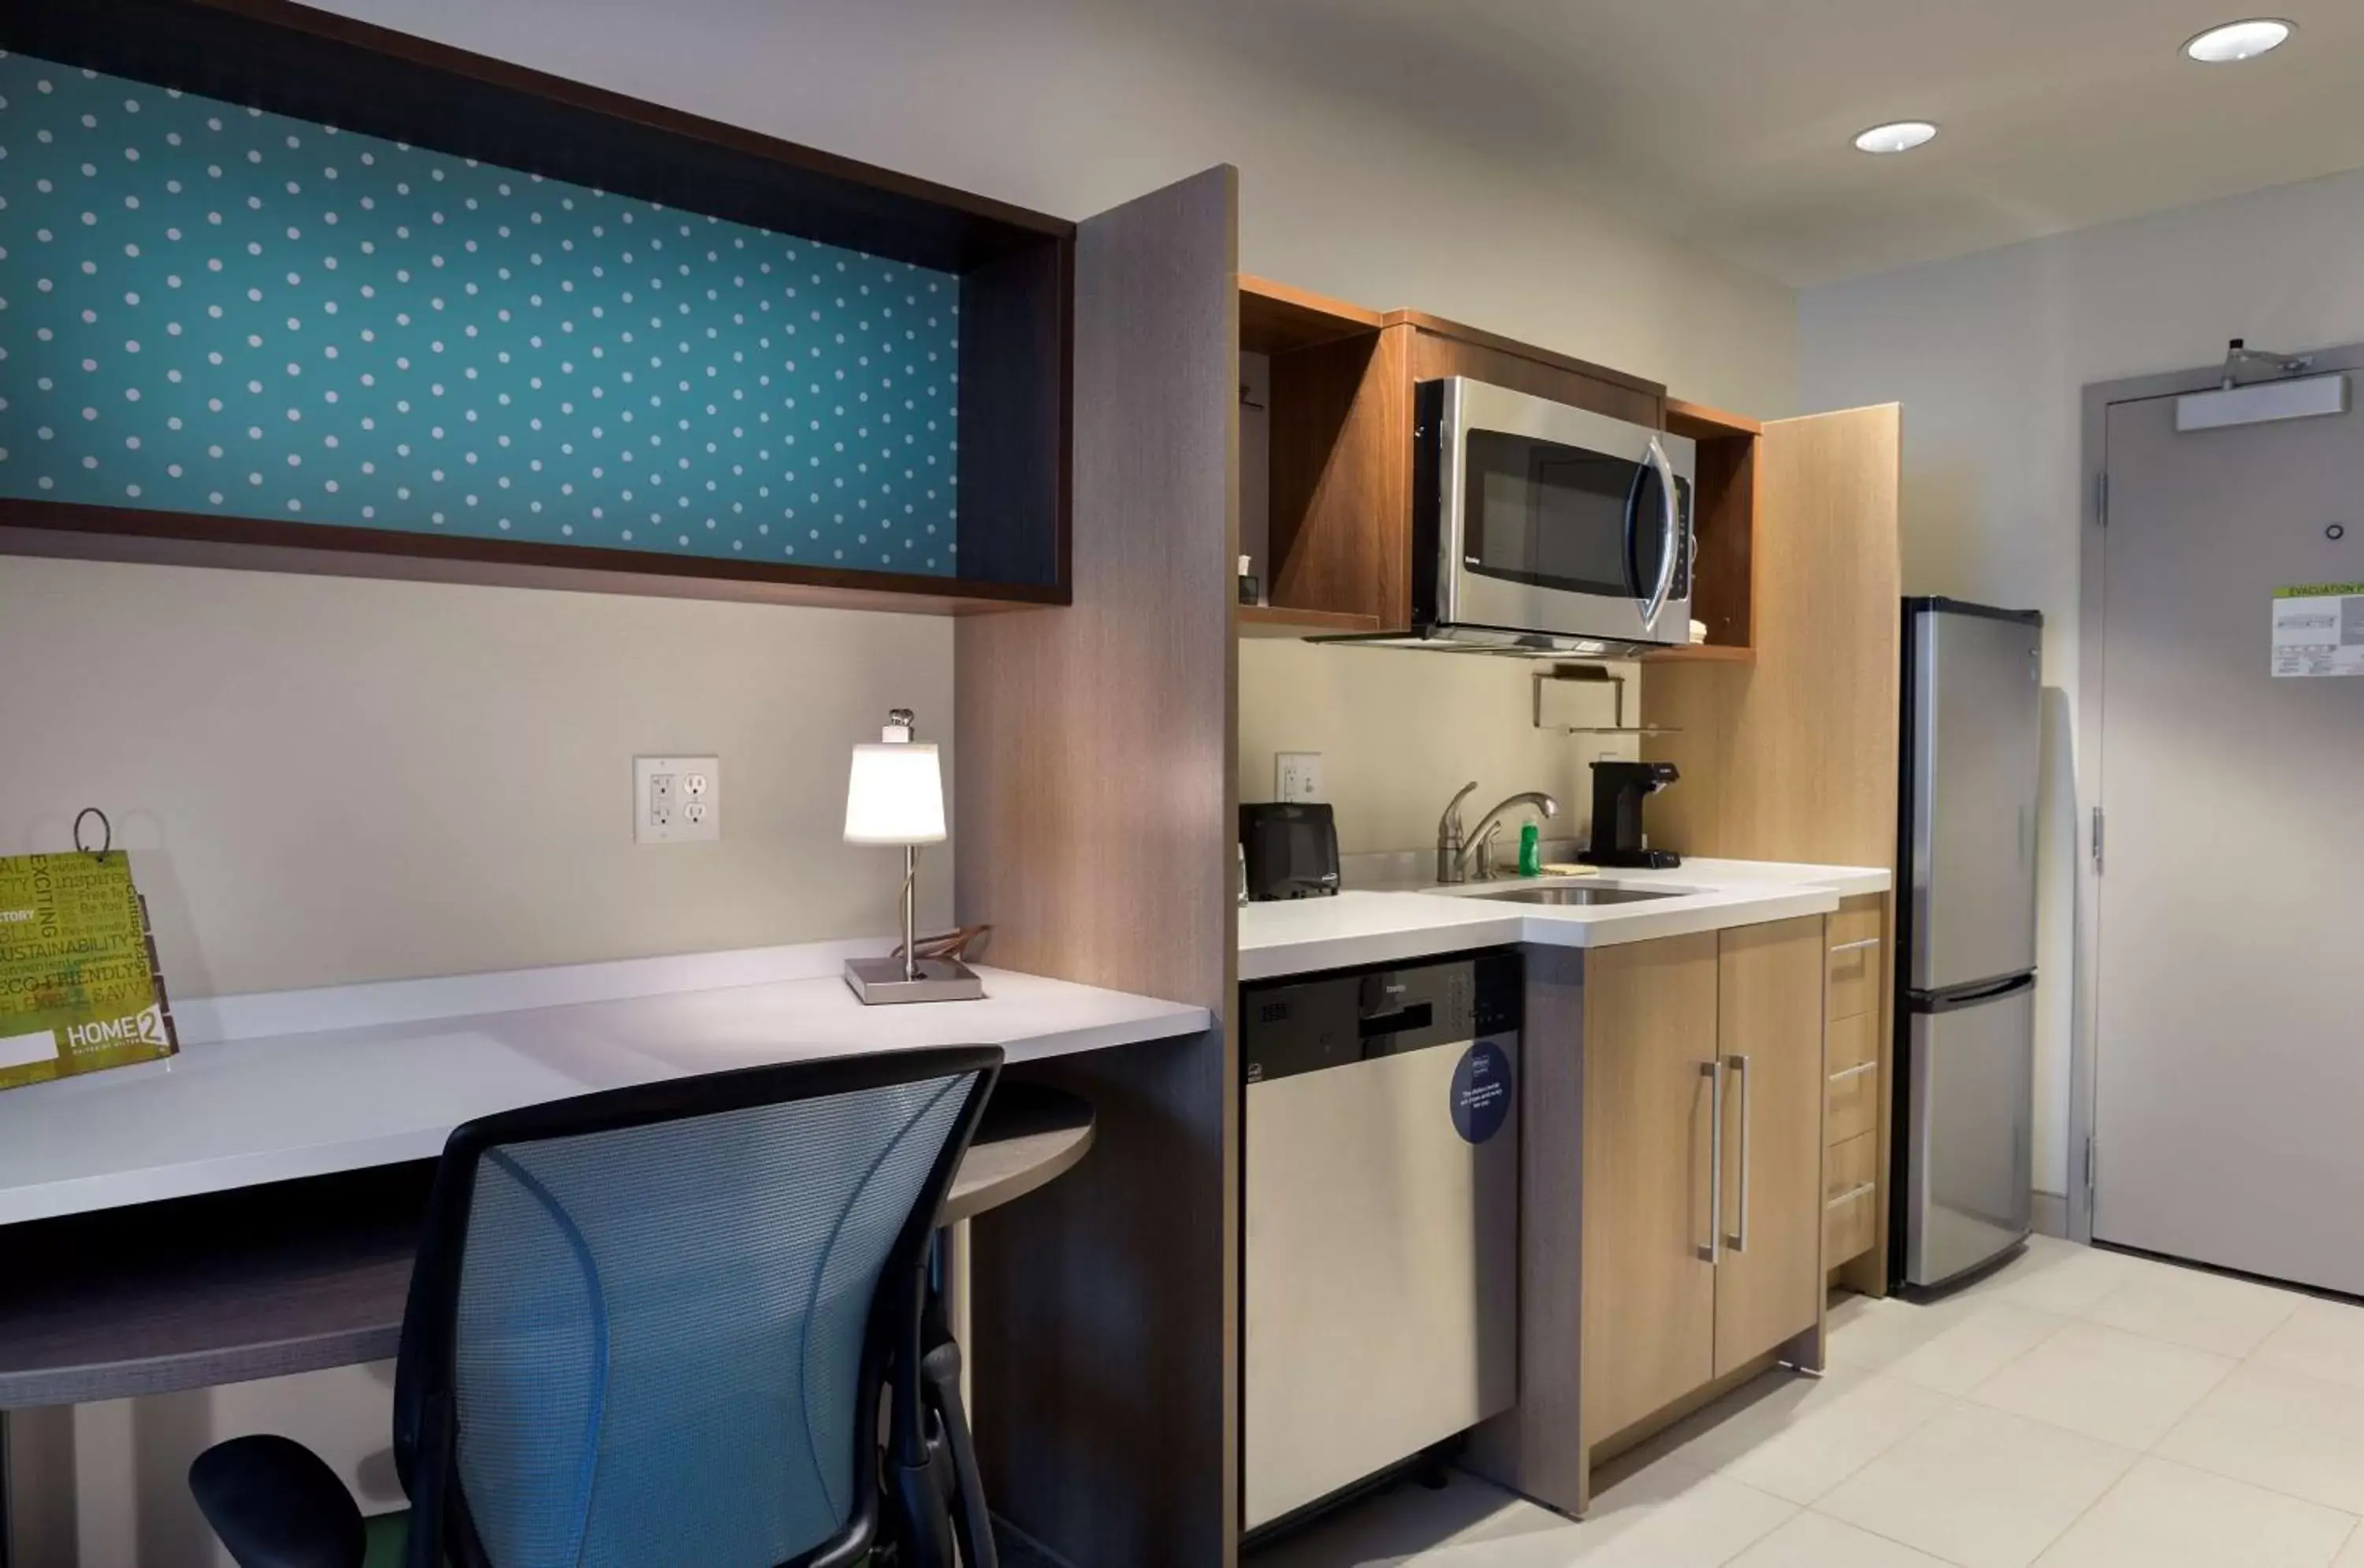 Kitchen or kitchenette, Kitchen/Kitchenette in Home2 Suites By Hilton Charlotte Belmont, Nc